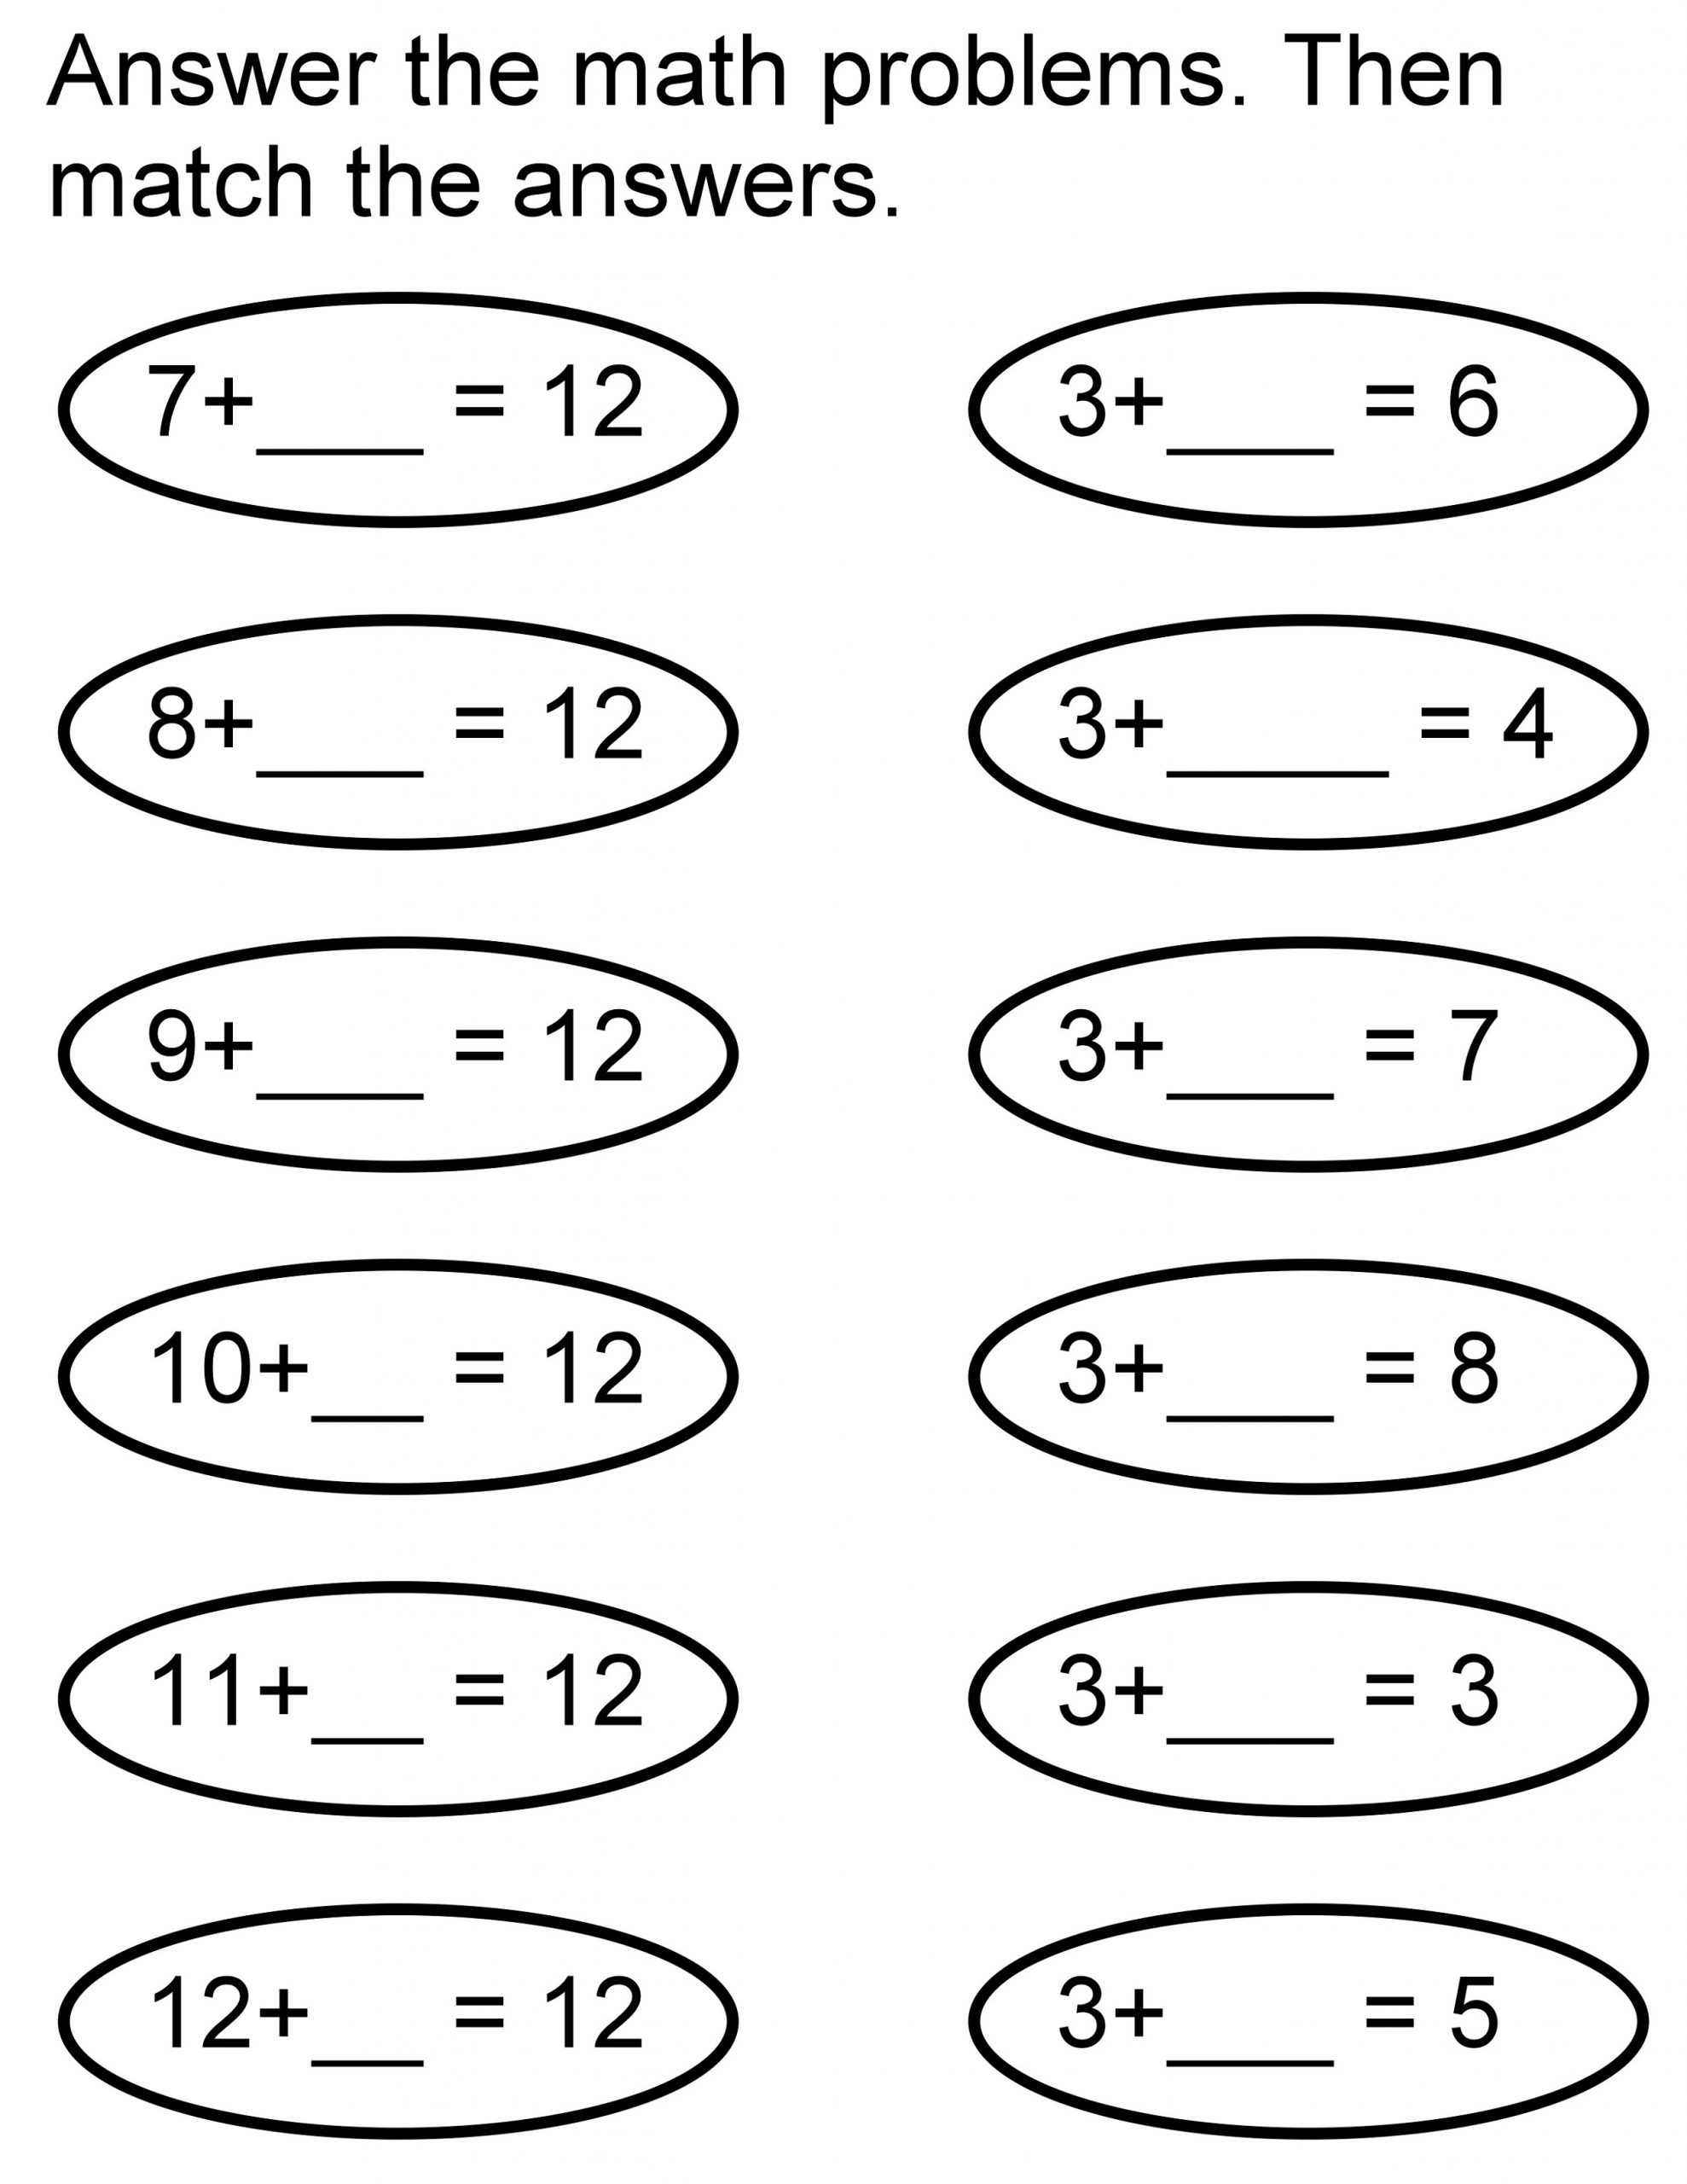 Matching Fun Math Worksheets